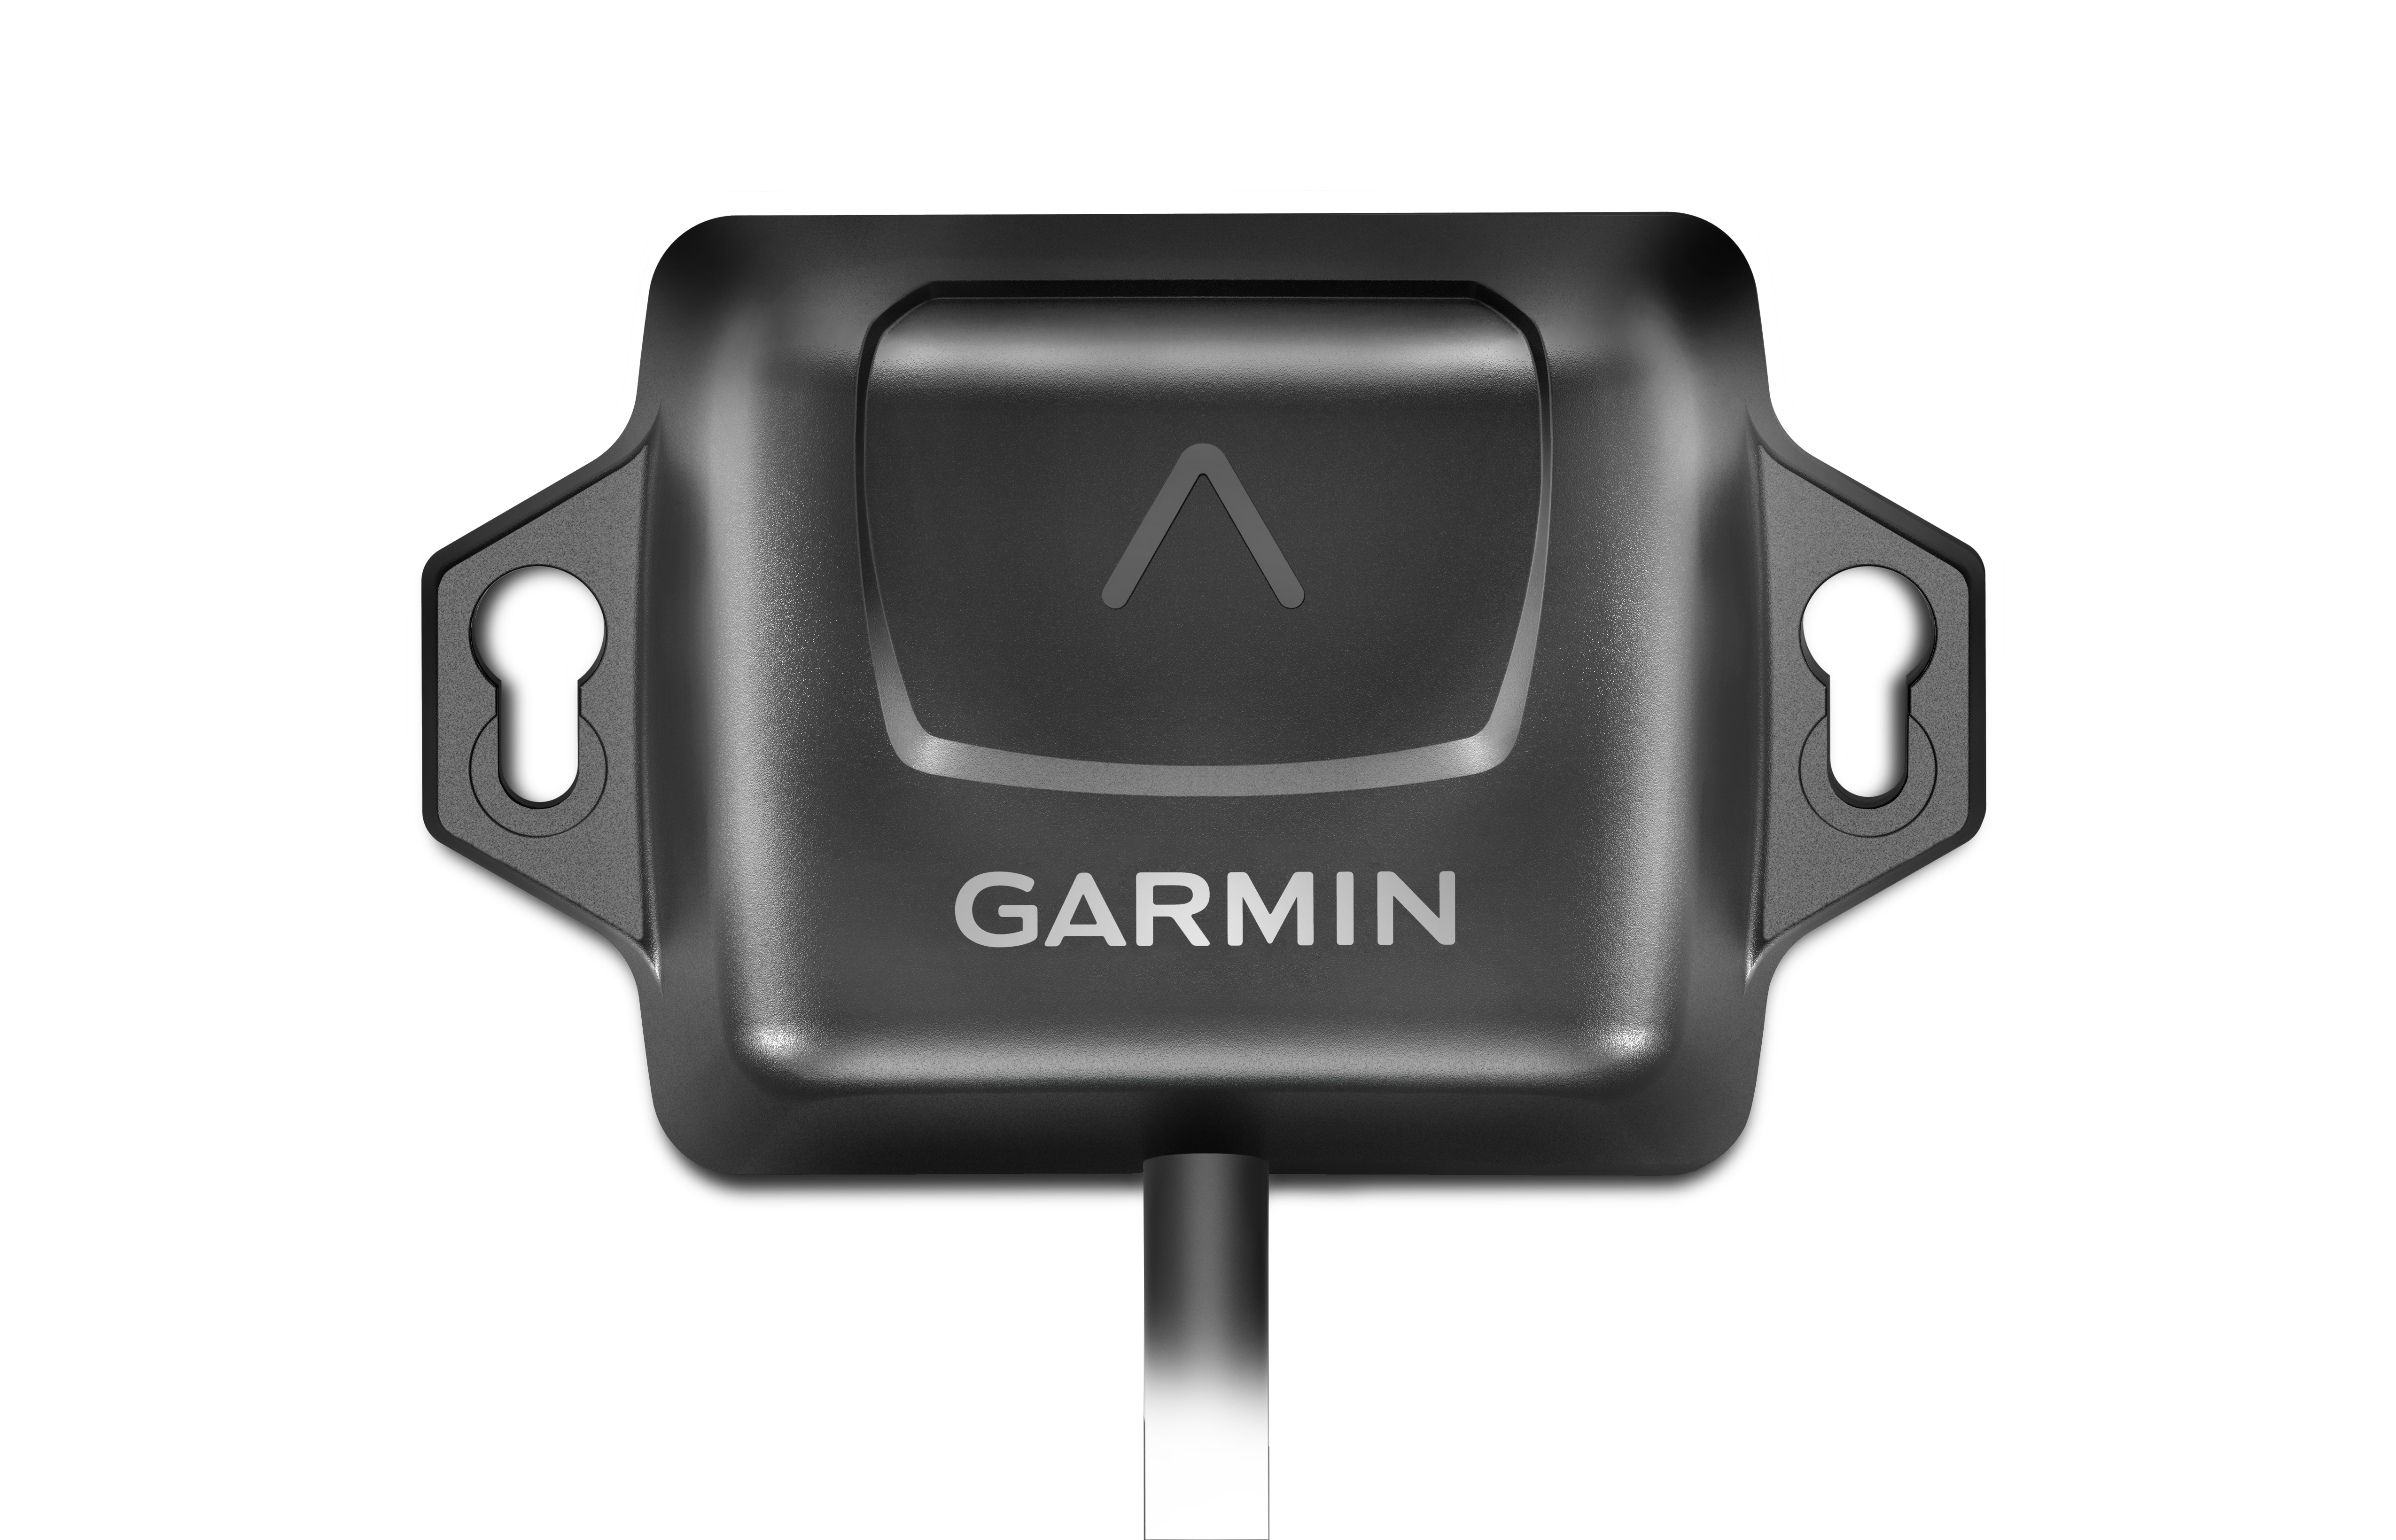 Garmin SteadyCast heading sensor